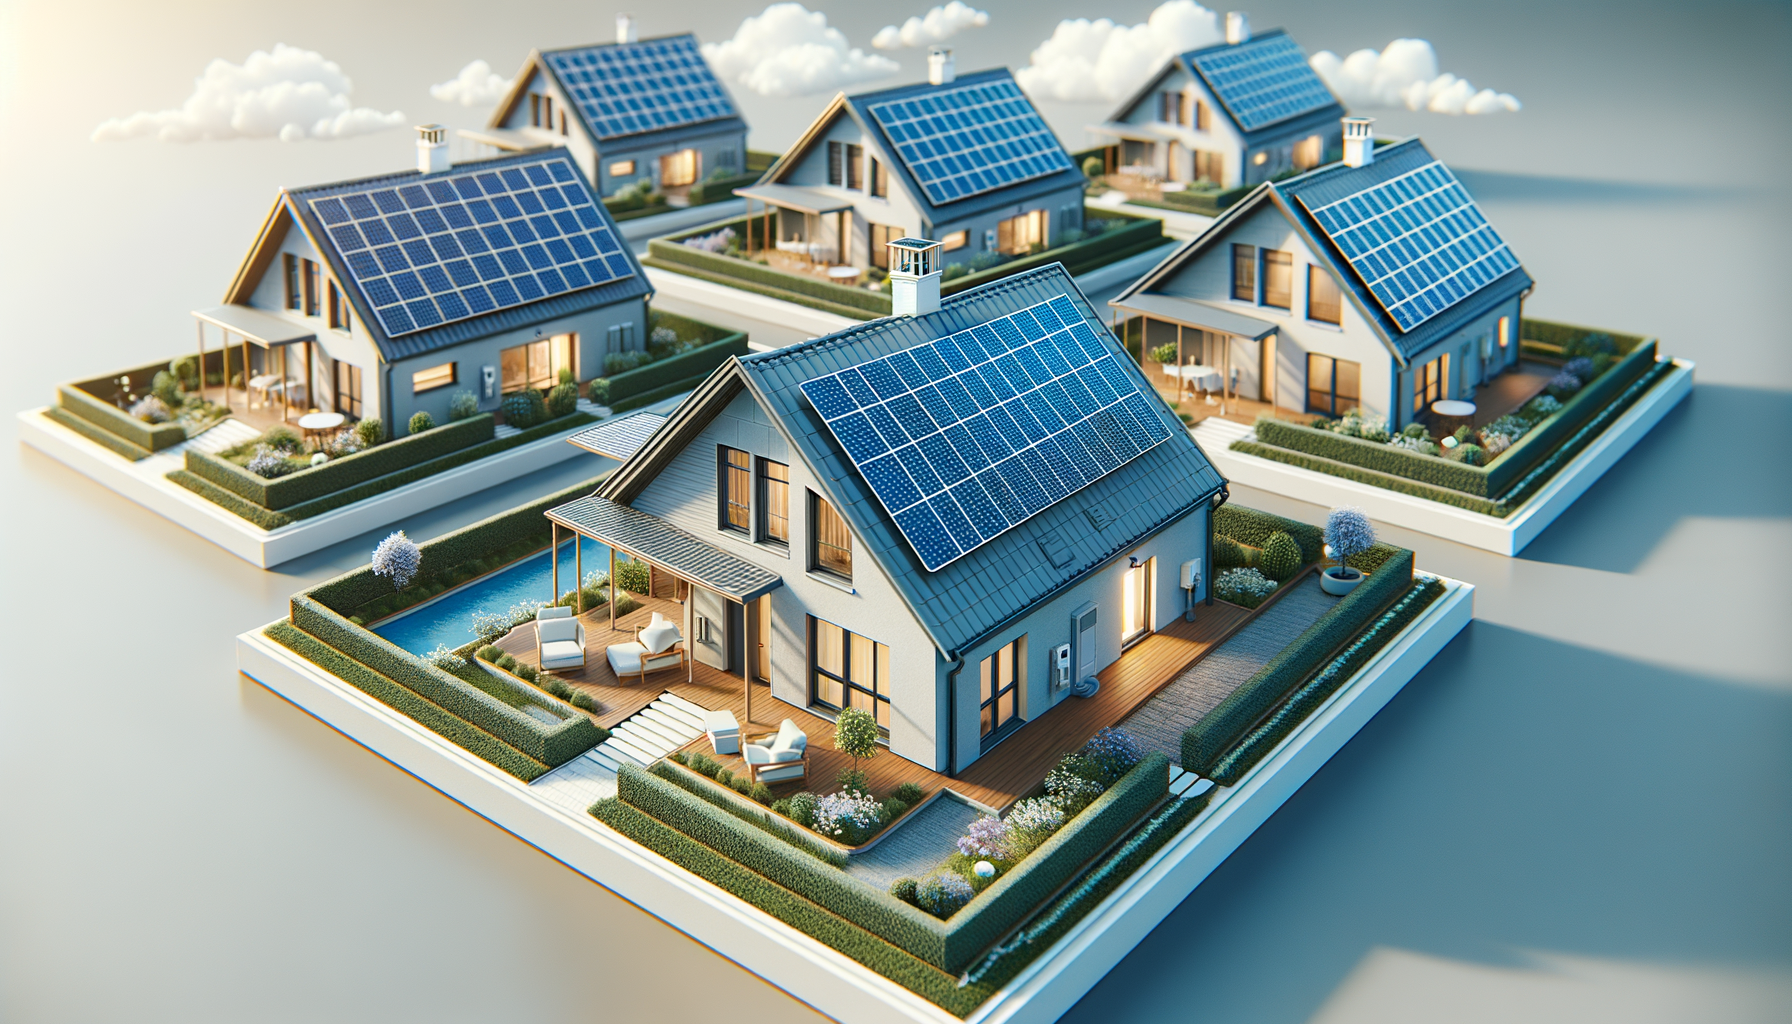 ALT: Solar panels on a small house